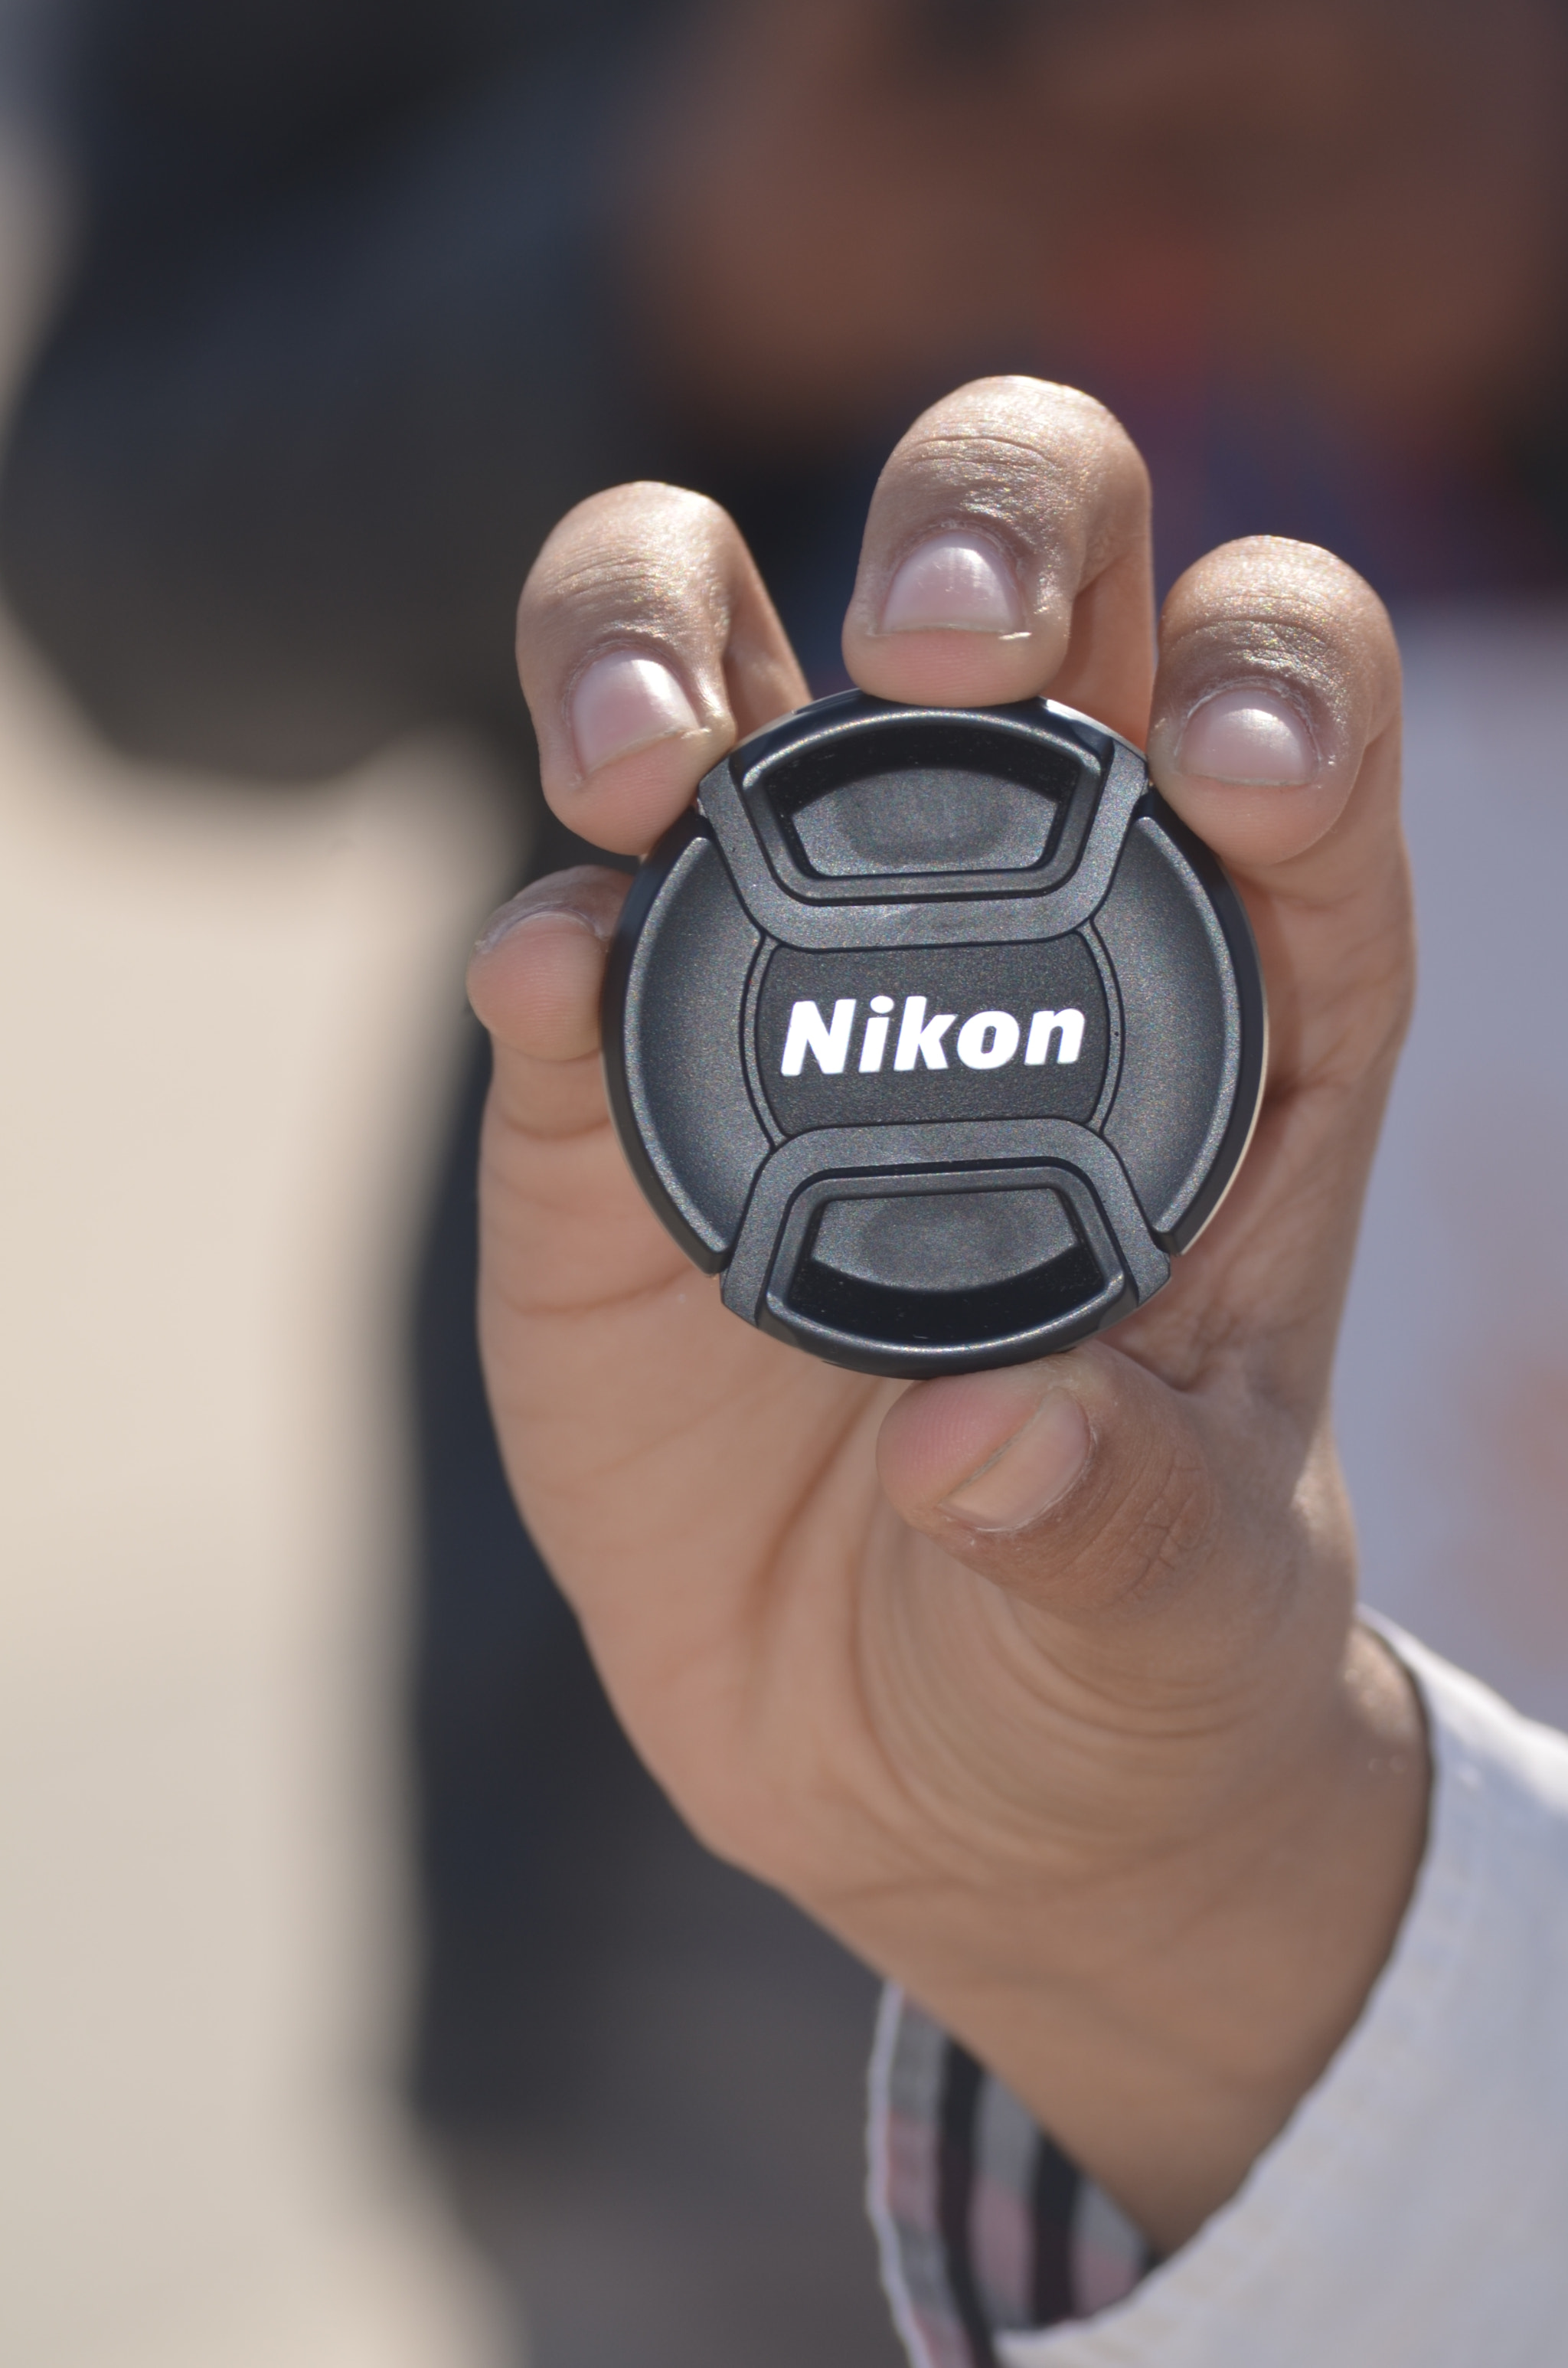 Nikon D5100 + Nikon AF-S DX Nikkor 55-200mm F4-5.6G VR II sample photo. Nikon photography